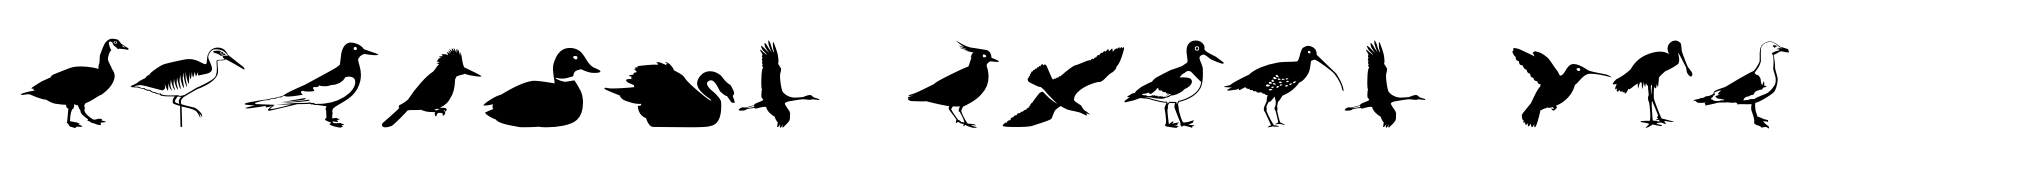 Altemus Birds Two image